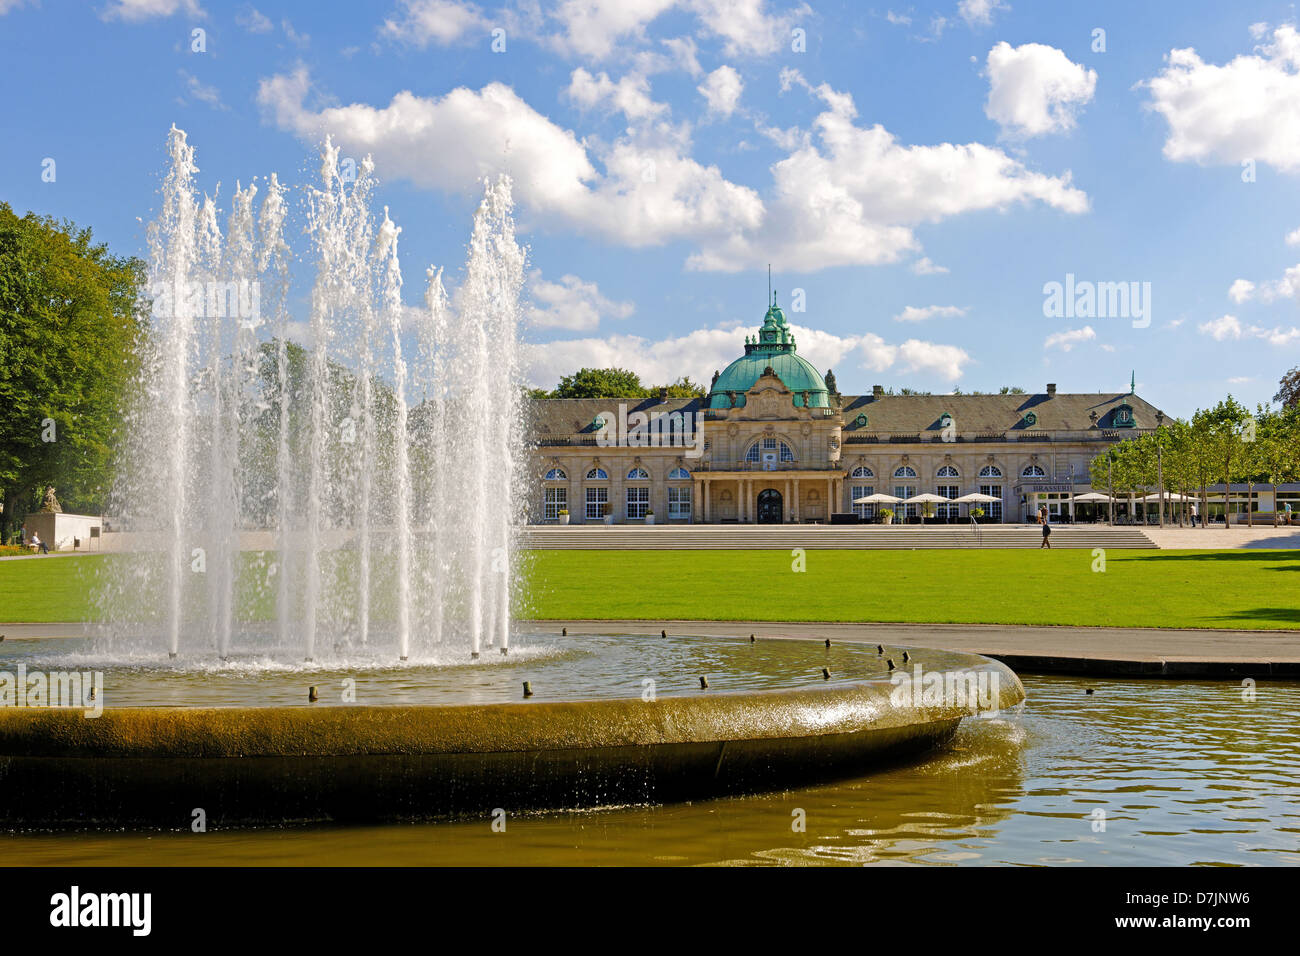 Der Kaiserpalast in den Kurpark in Bad Oeynhausen, Deutschland Stockfoto